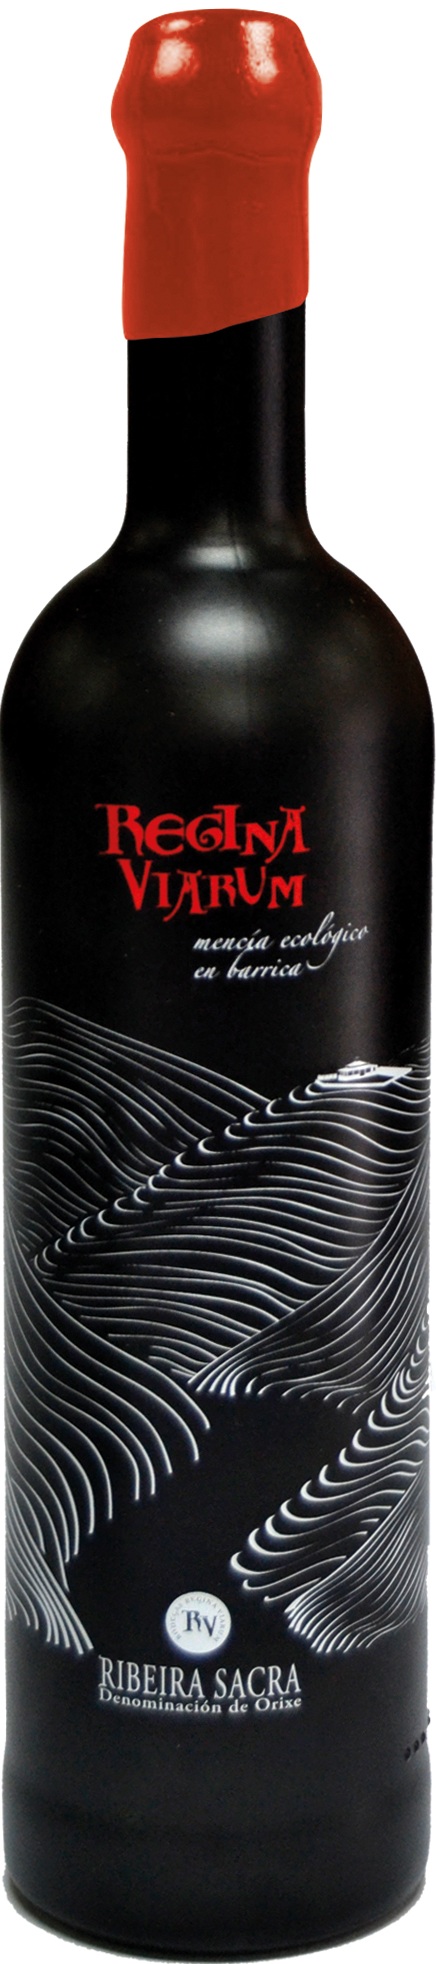 Logo Wine Regina Viarum Mencía Ecológico en barrica